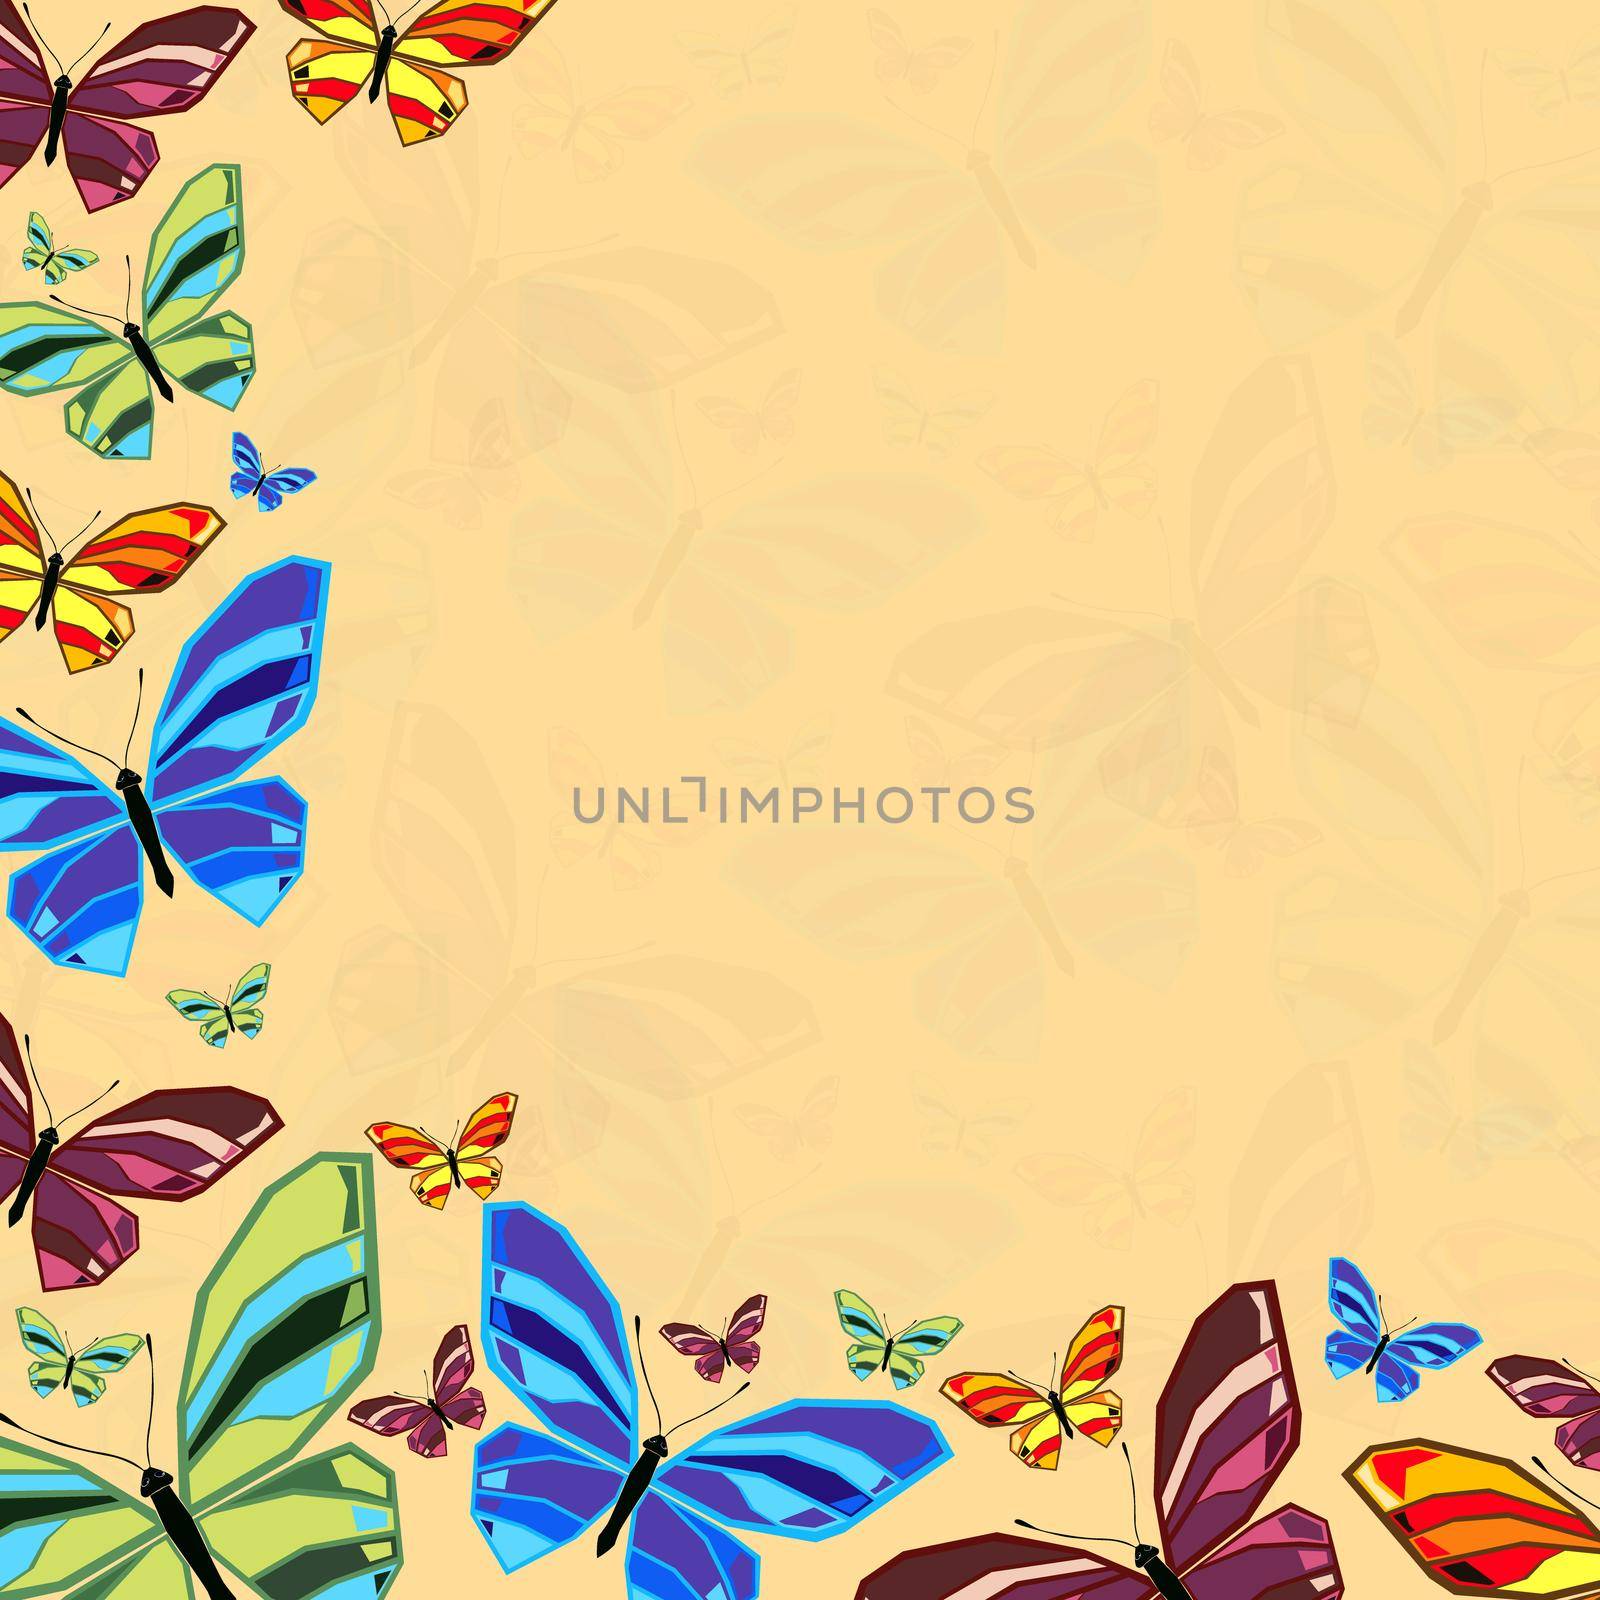 Butterfly6 by Bobnevv